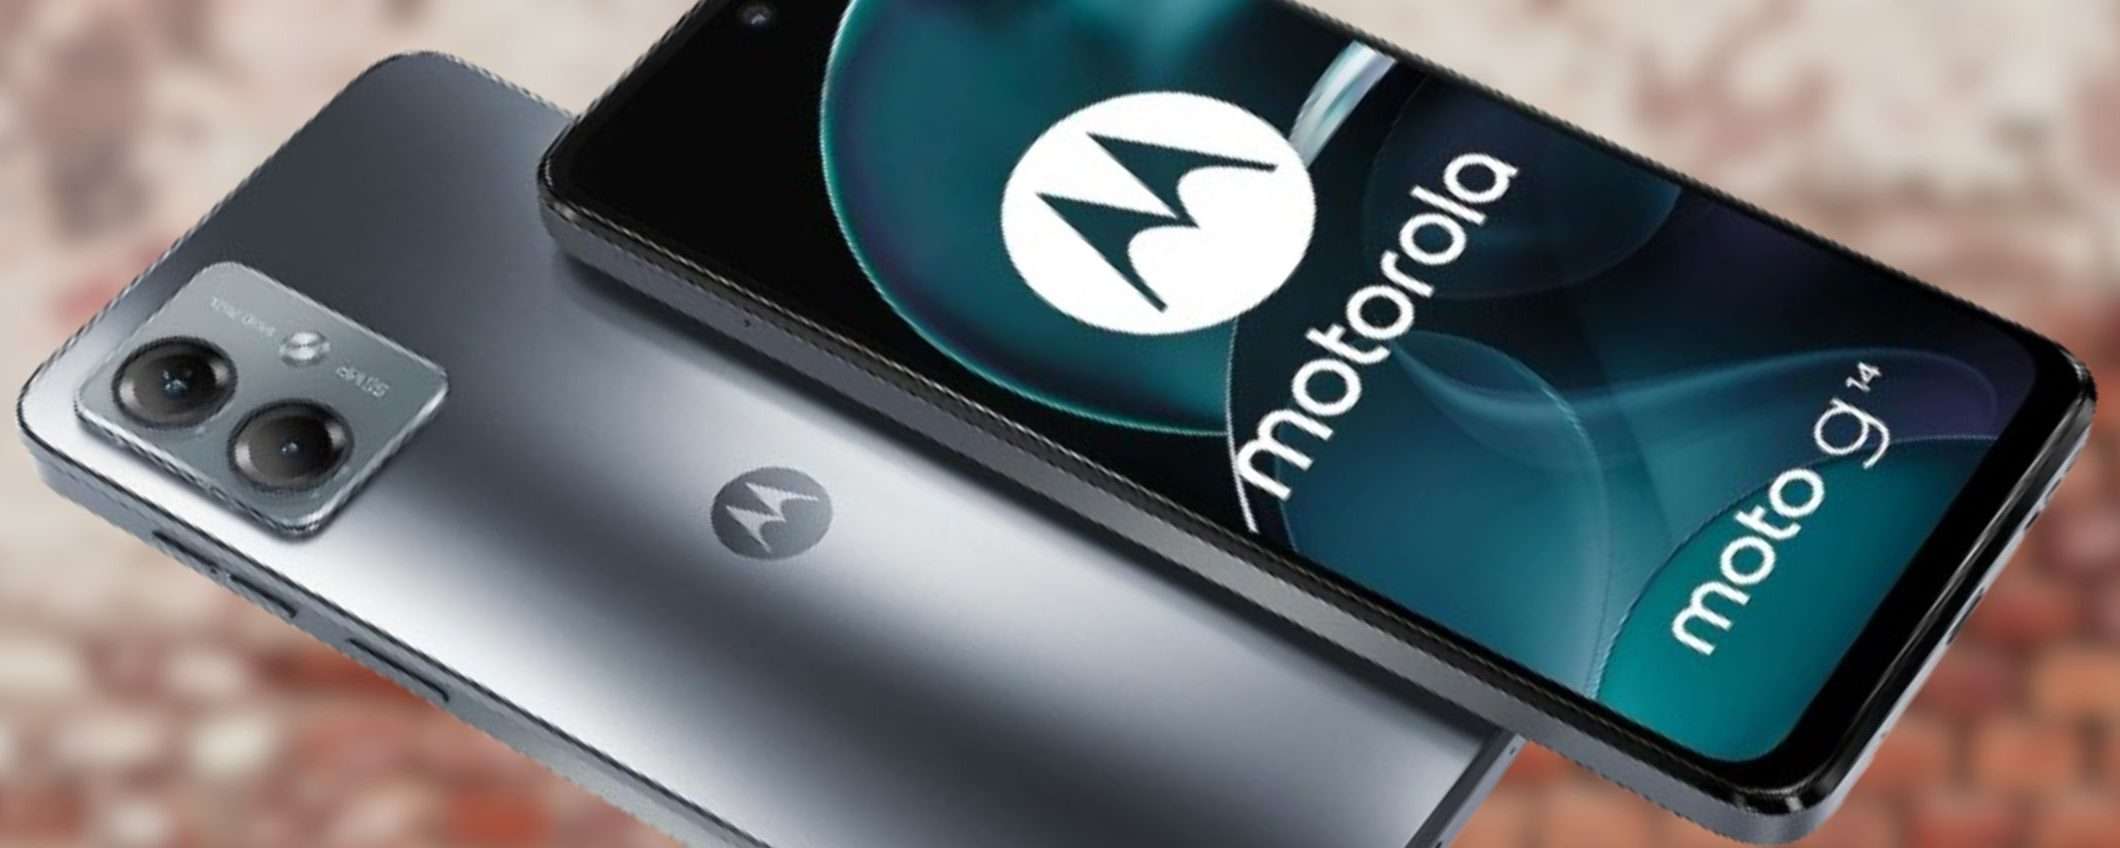 Motorola moto g14 a 97€ è semplicemente WOW: camera 50MP e batteria 5000 mAh